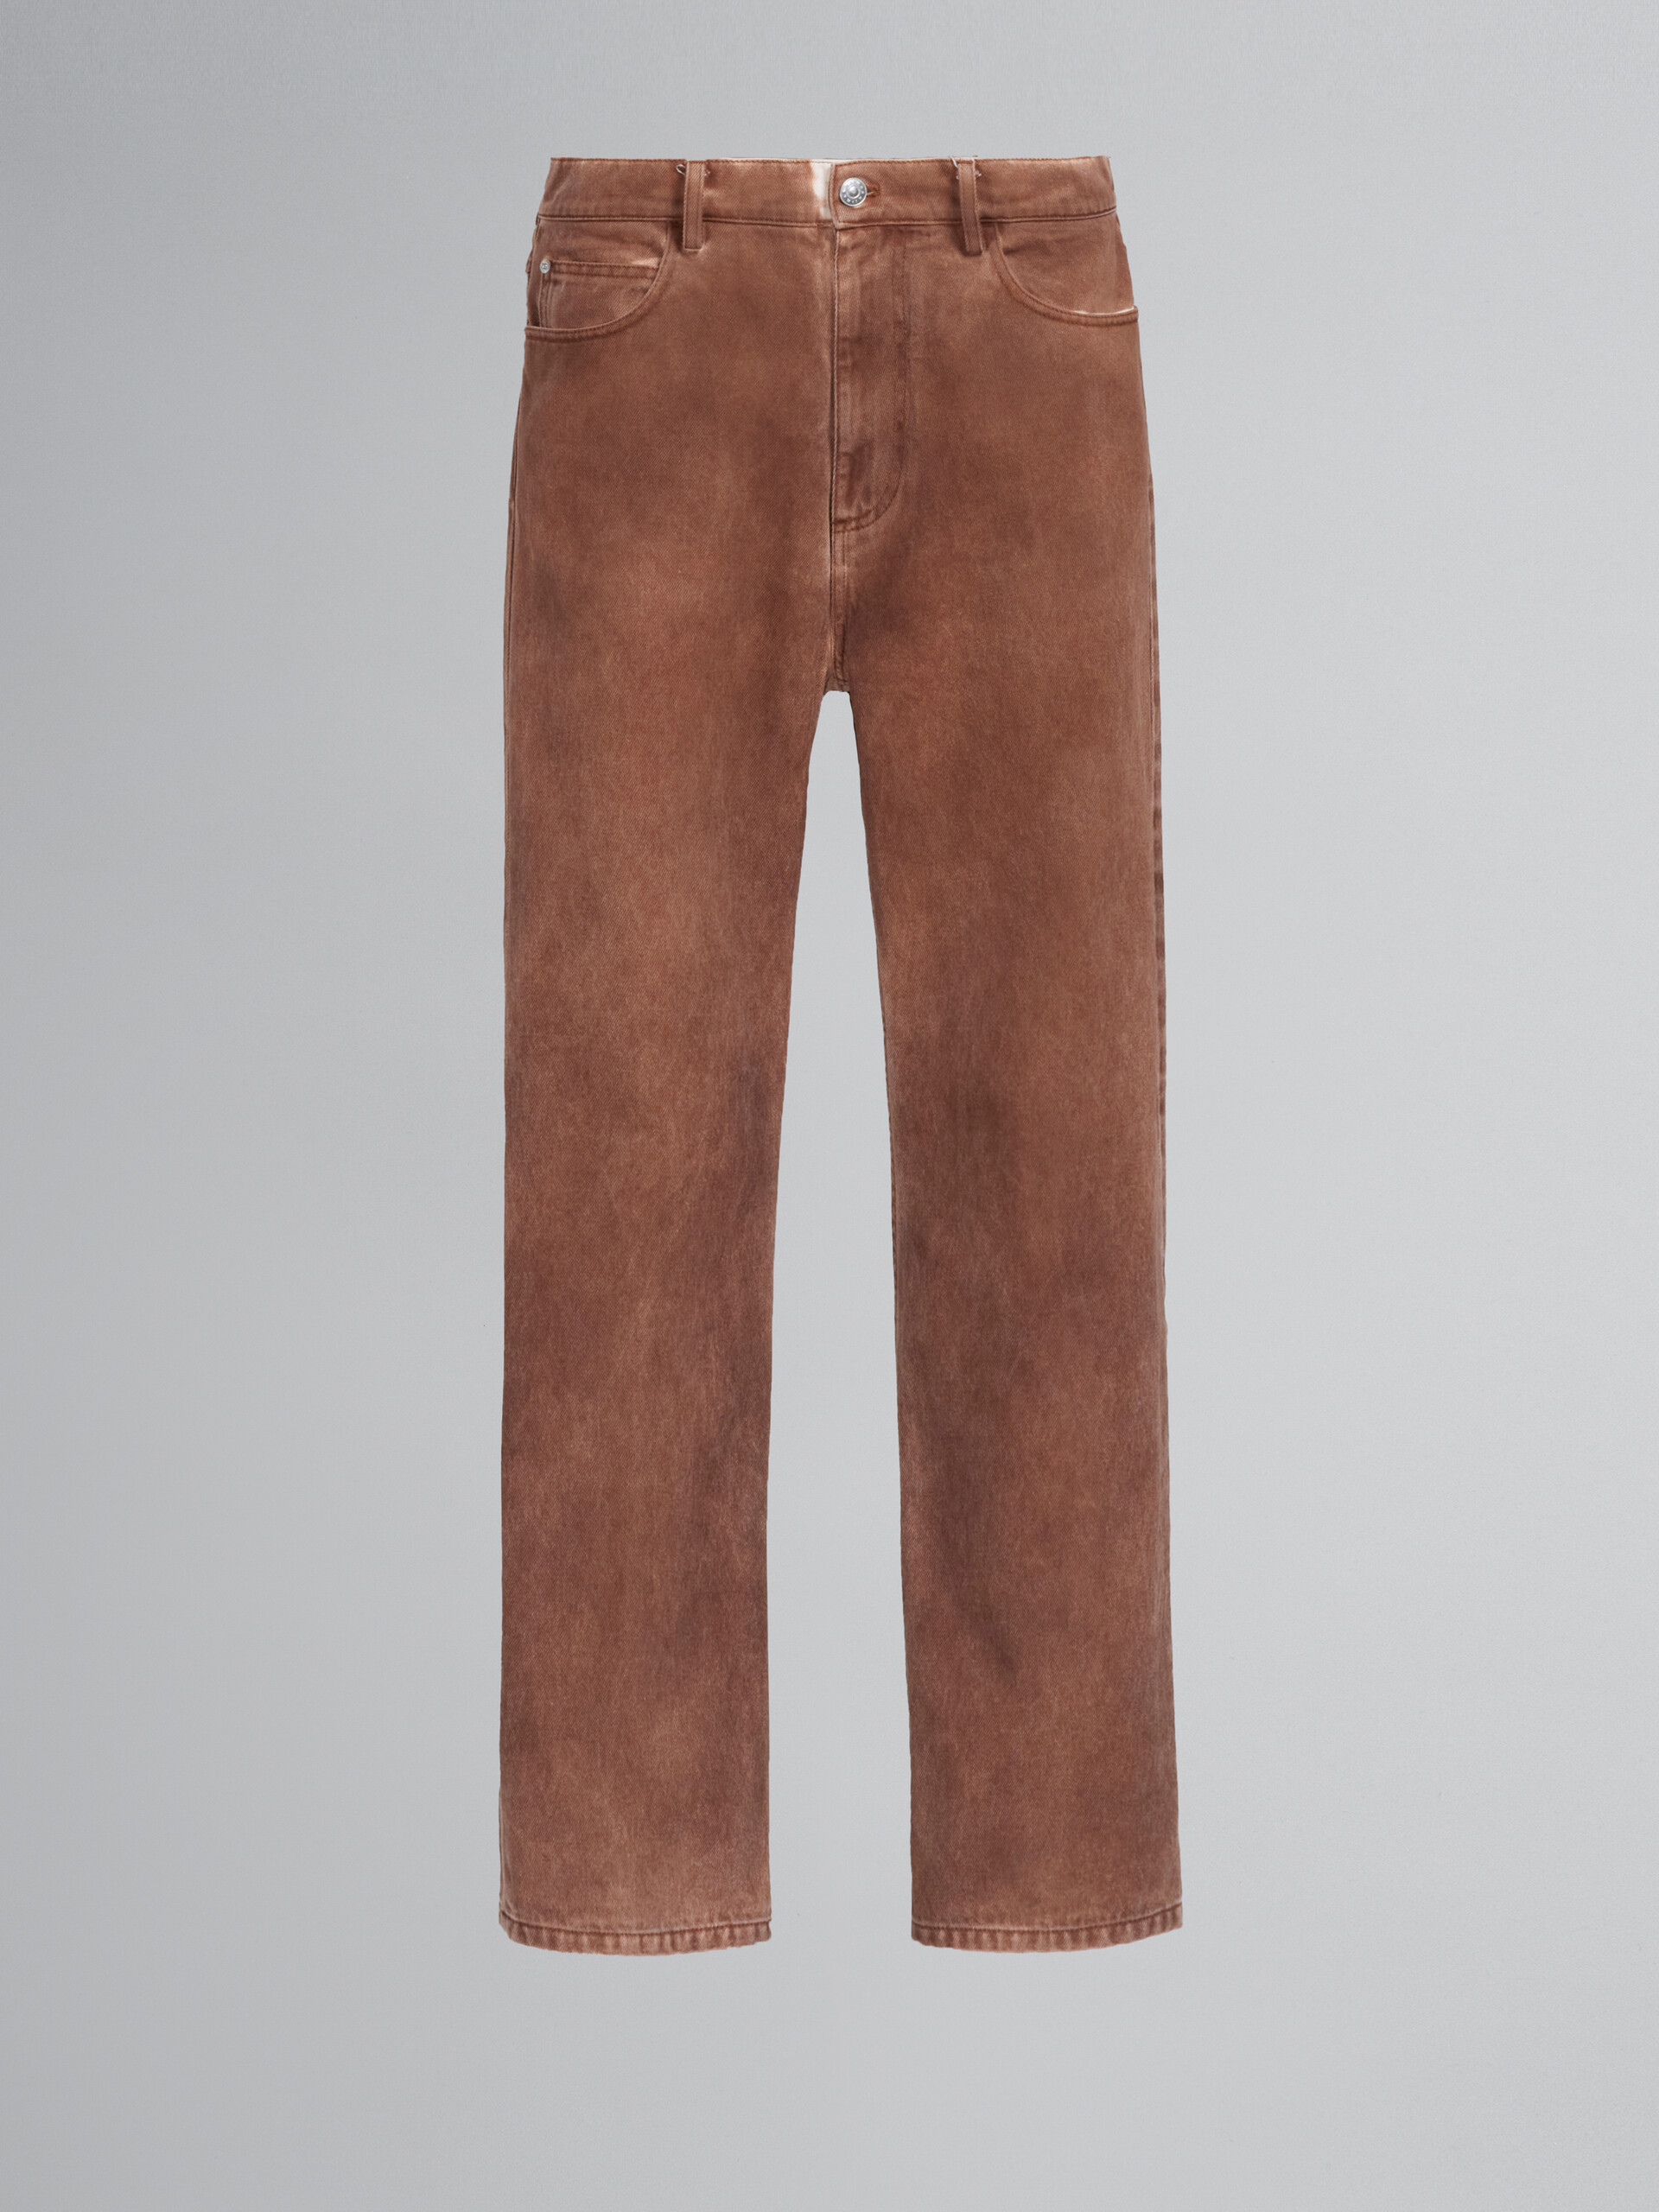 Brown denim pants - Pants - Image 1